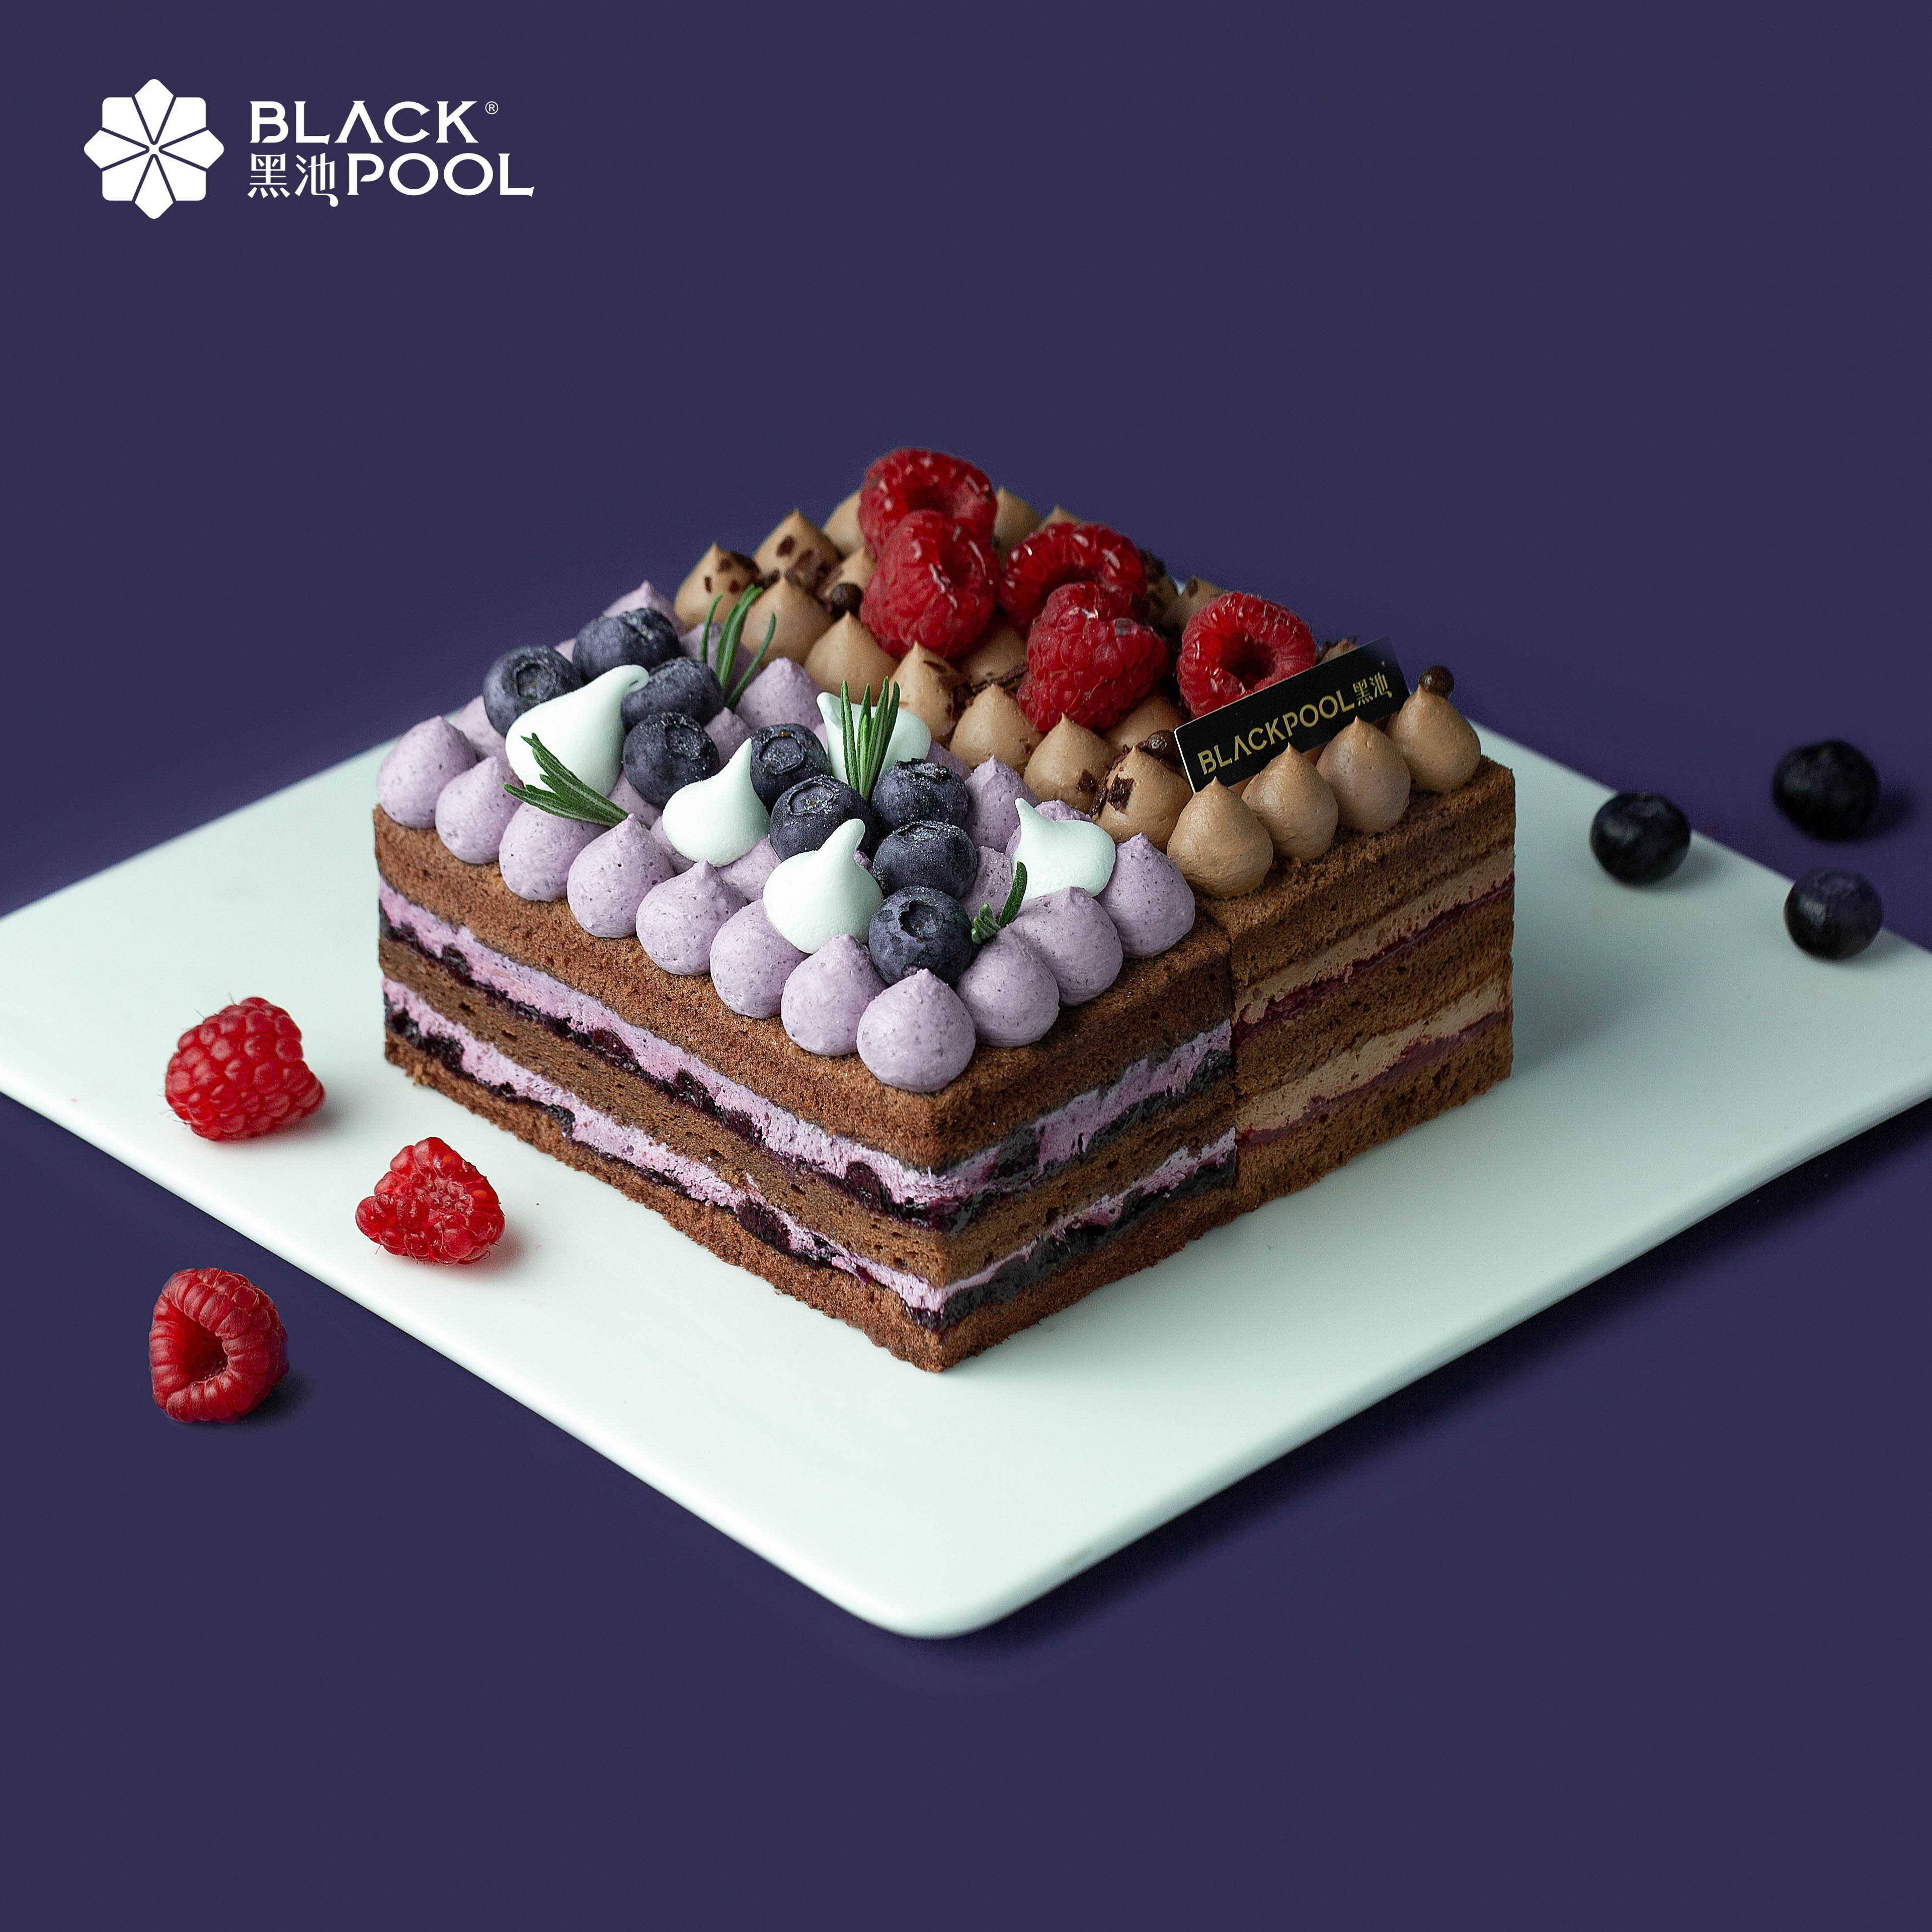 M系列蛋糕-黑池蛋糕_深圳顶级欧式甜点专家,其产品系列为黑池蛋糕,黑池马卡龙,黑池杯子蛋糕